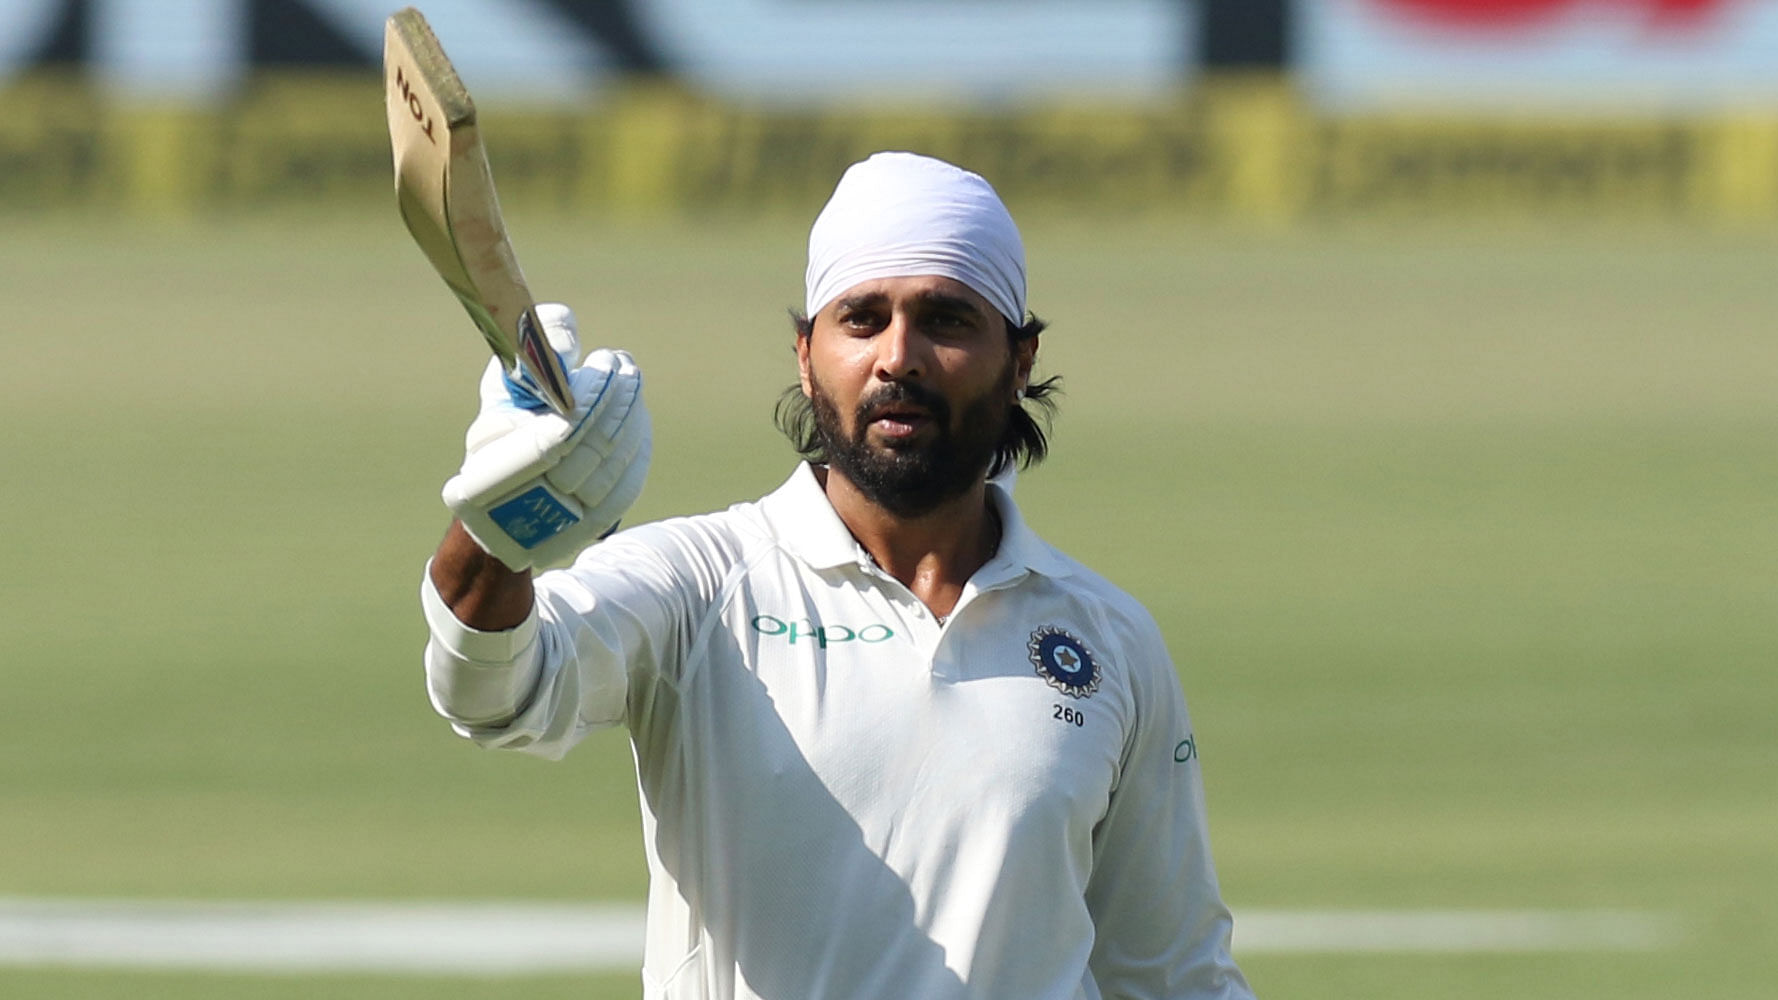 Vijay has so far played 59 Tests and scored 3933 runs at an average of 39.33.